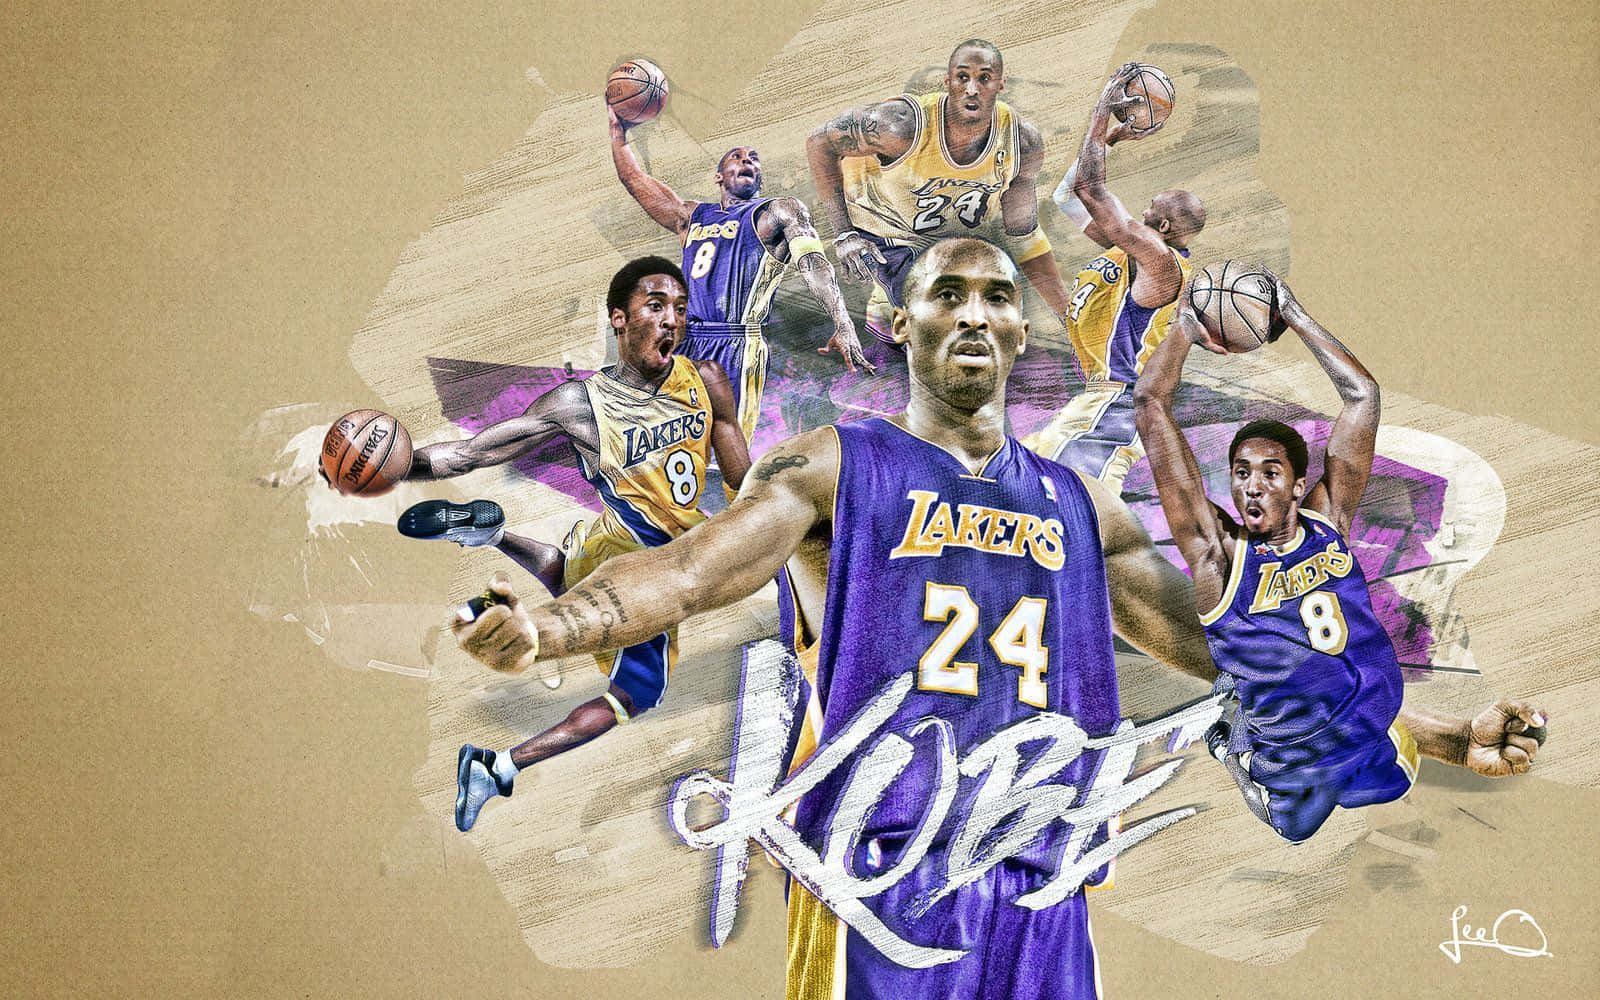 Legendariojugador De Los Lakers De Los Angeles, Kobe Bryant.